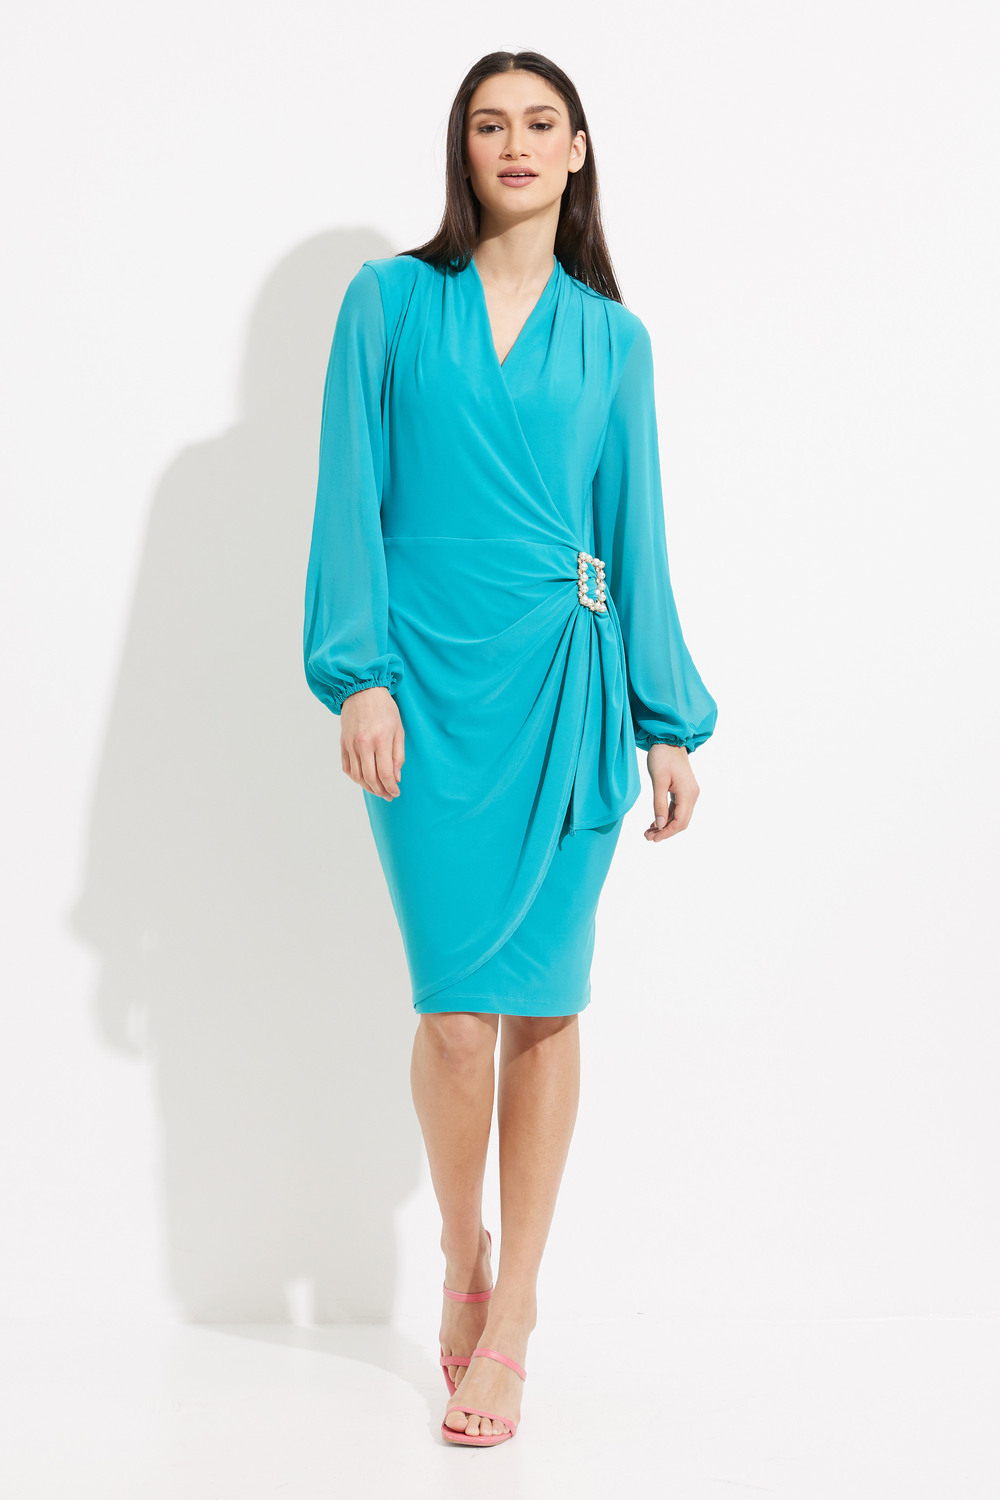 Brooch Detail Wrap Dress Style 231733. Ocean Blue